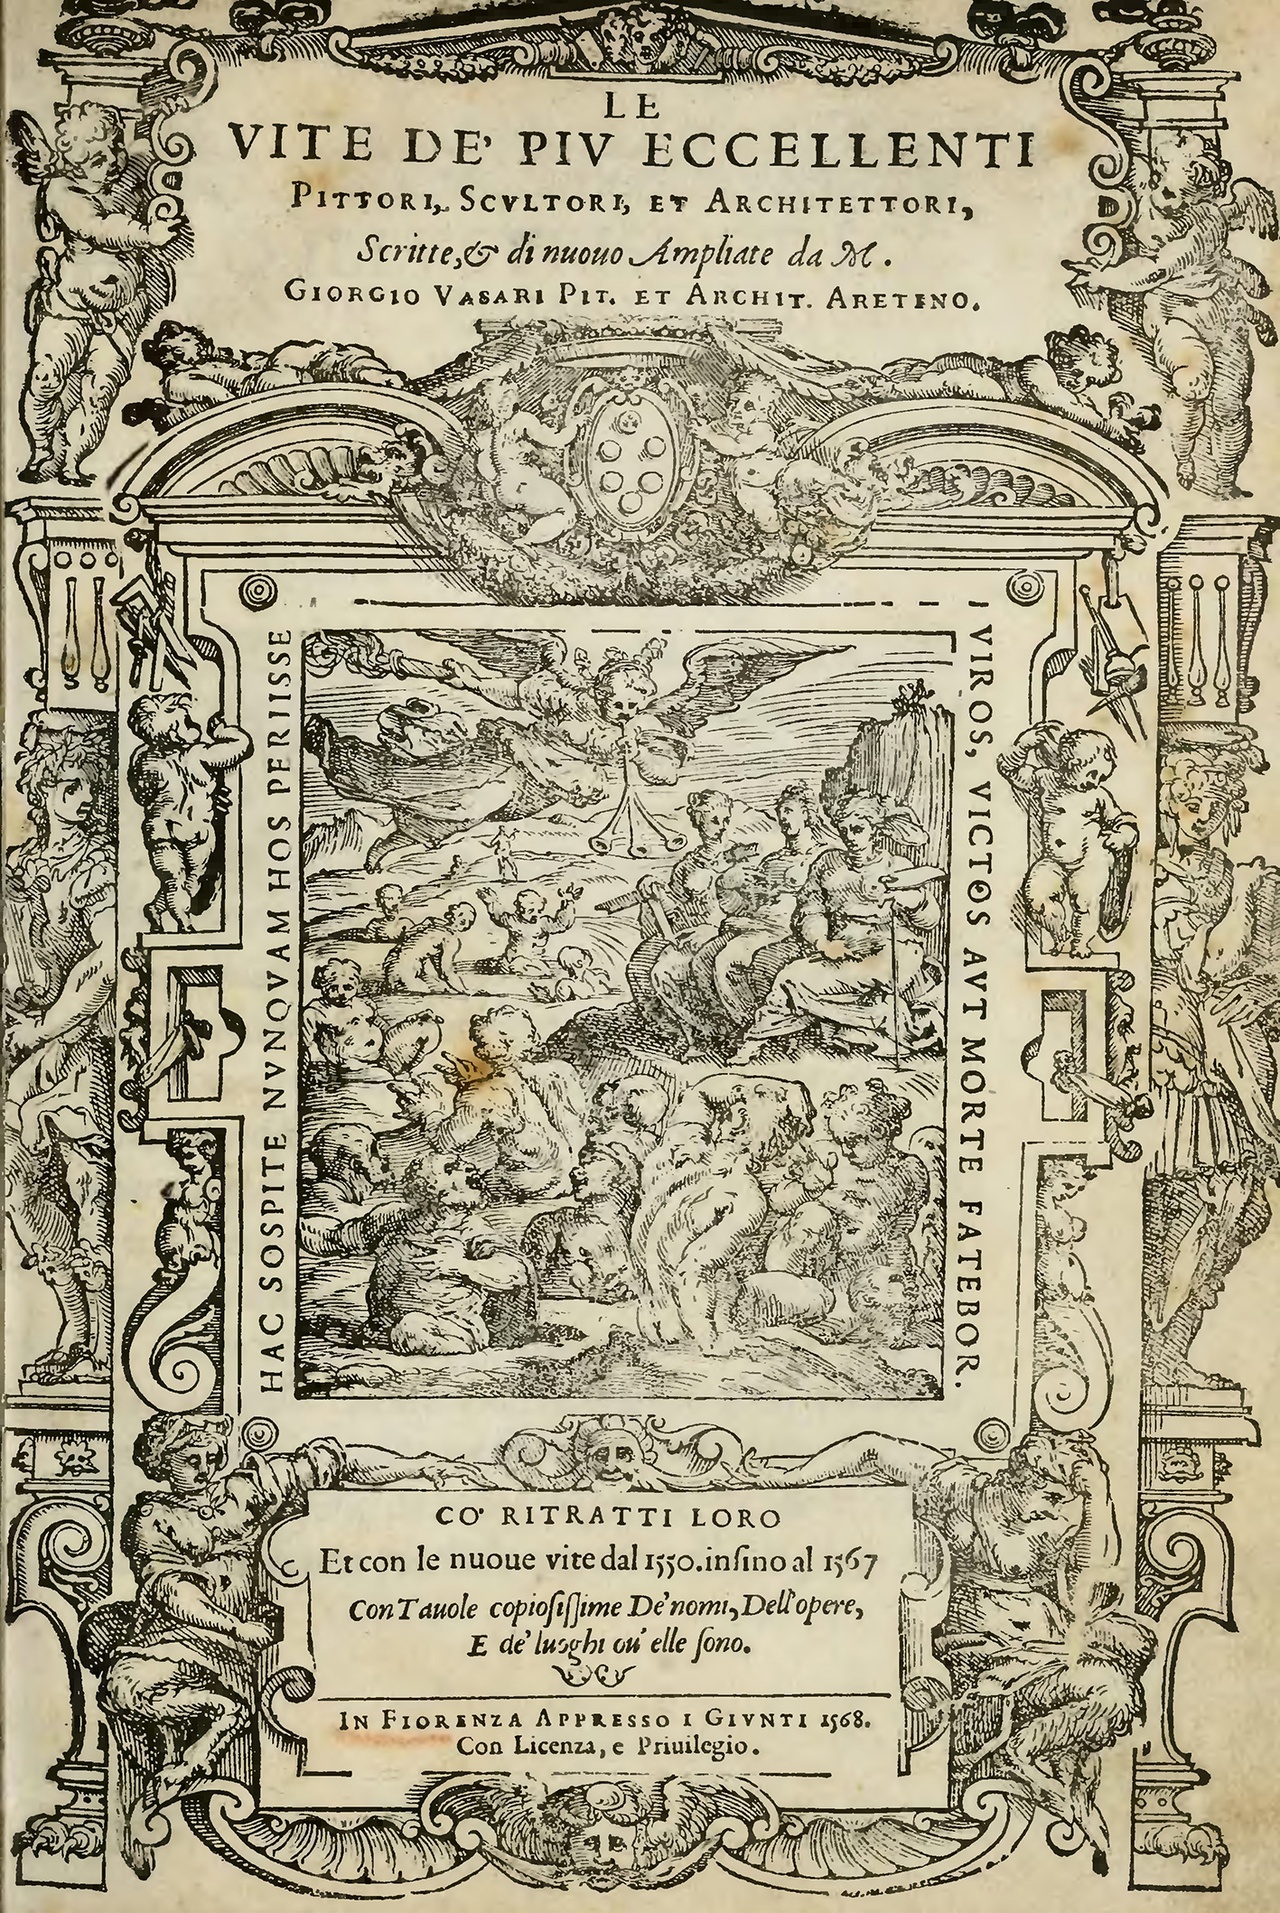 Giorgio Vasari, „Le vite de’ più eccellenti pittori, scultori e architettori“, 1550, frontispiece / Frontispiz